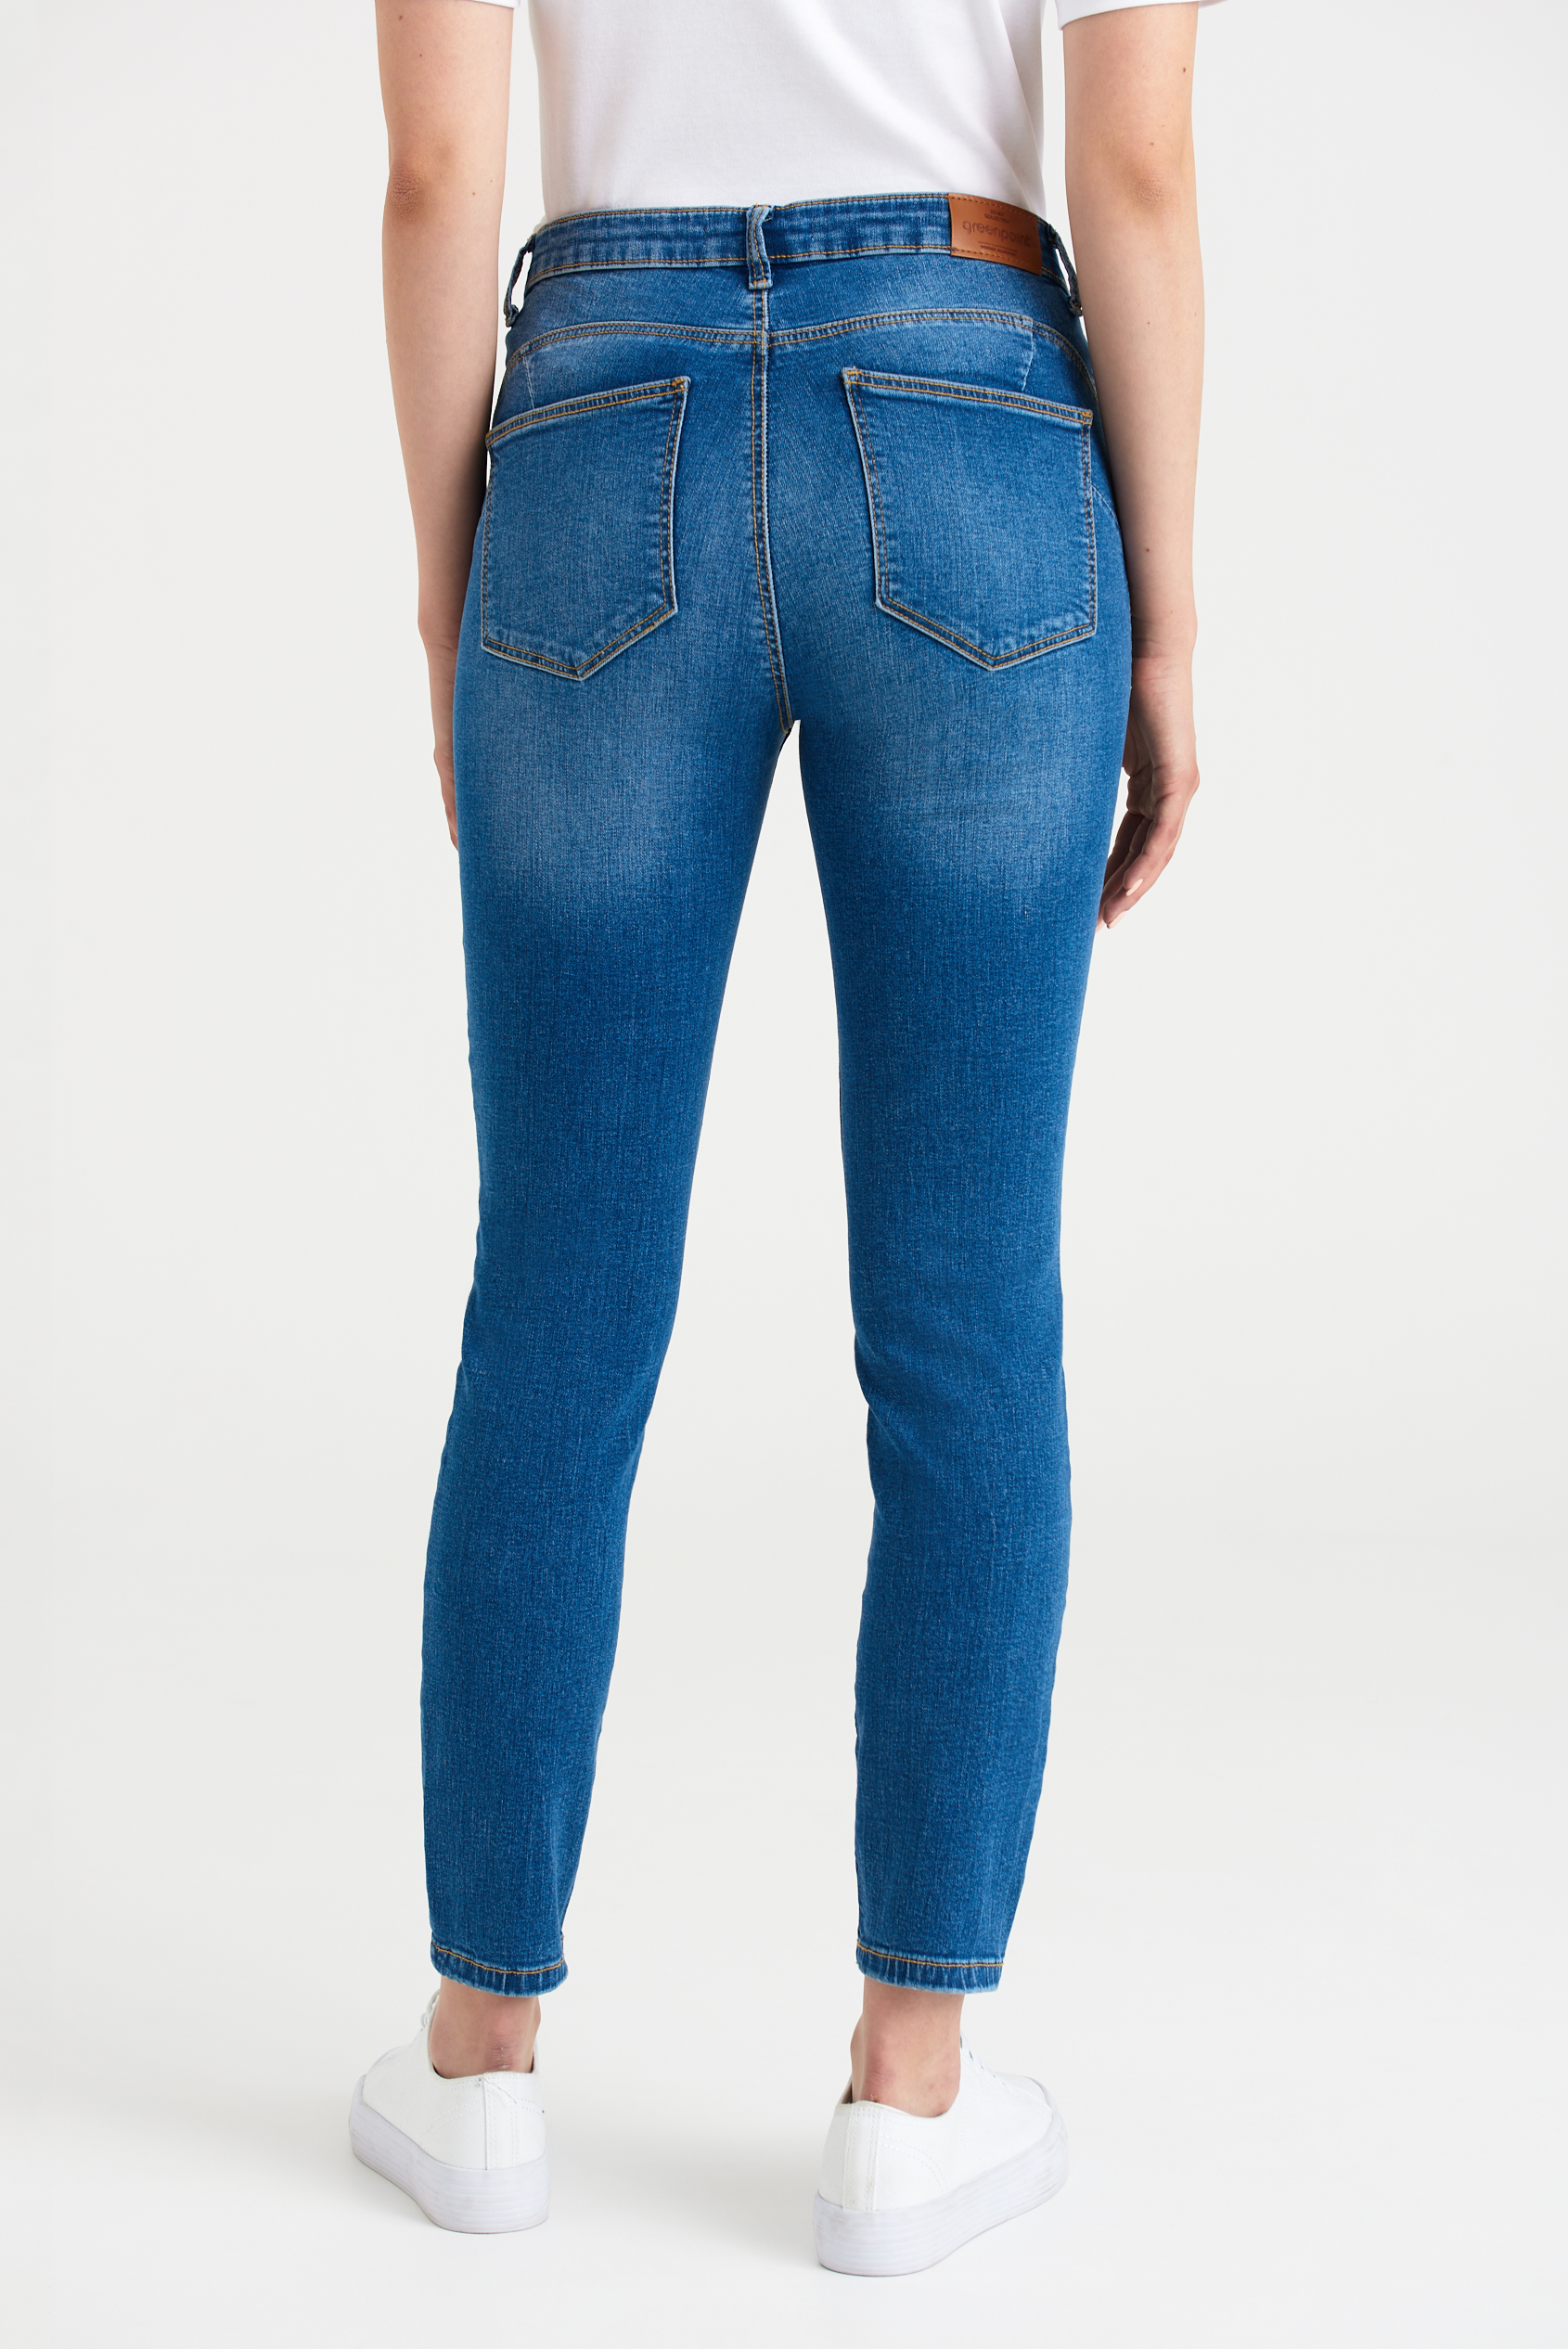 Klasyczne jeansy typu skinny push up, niebieskie